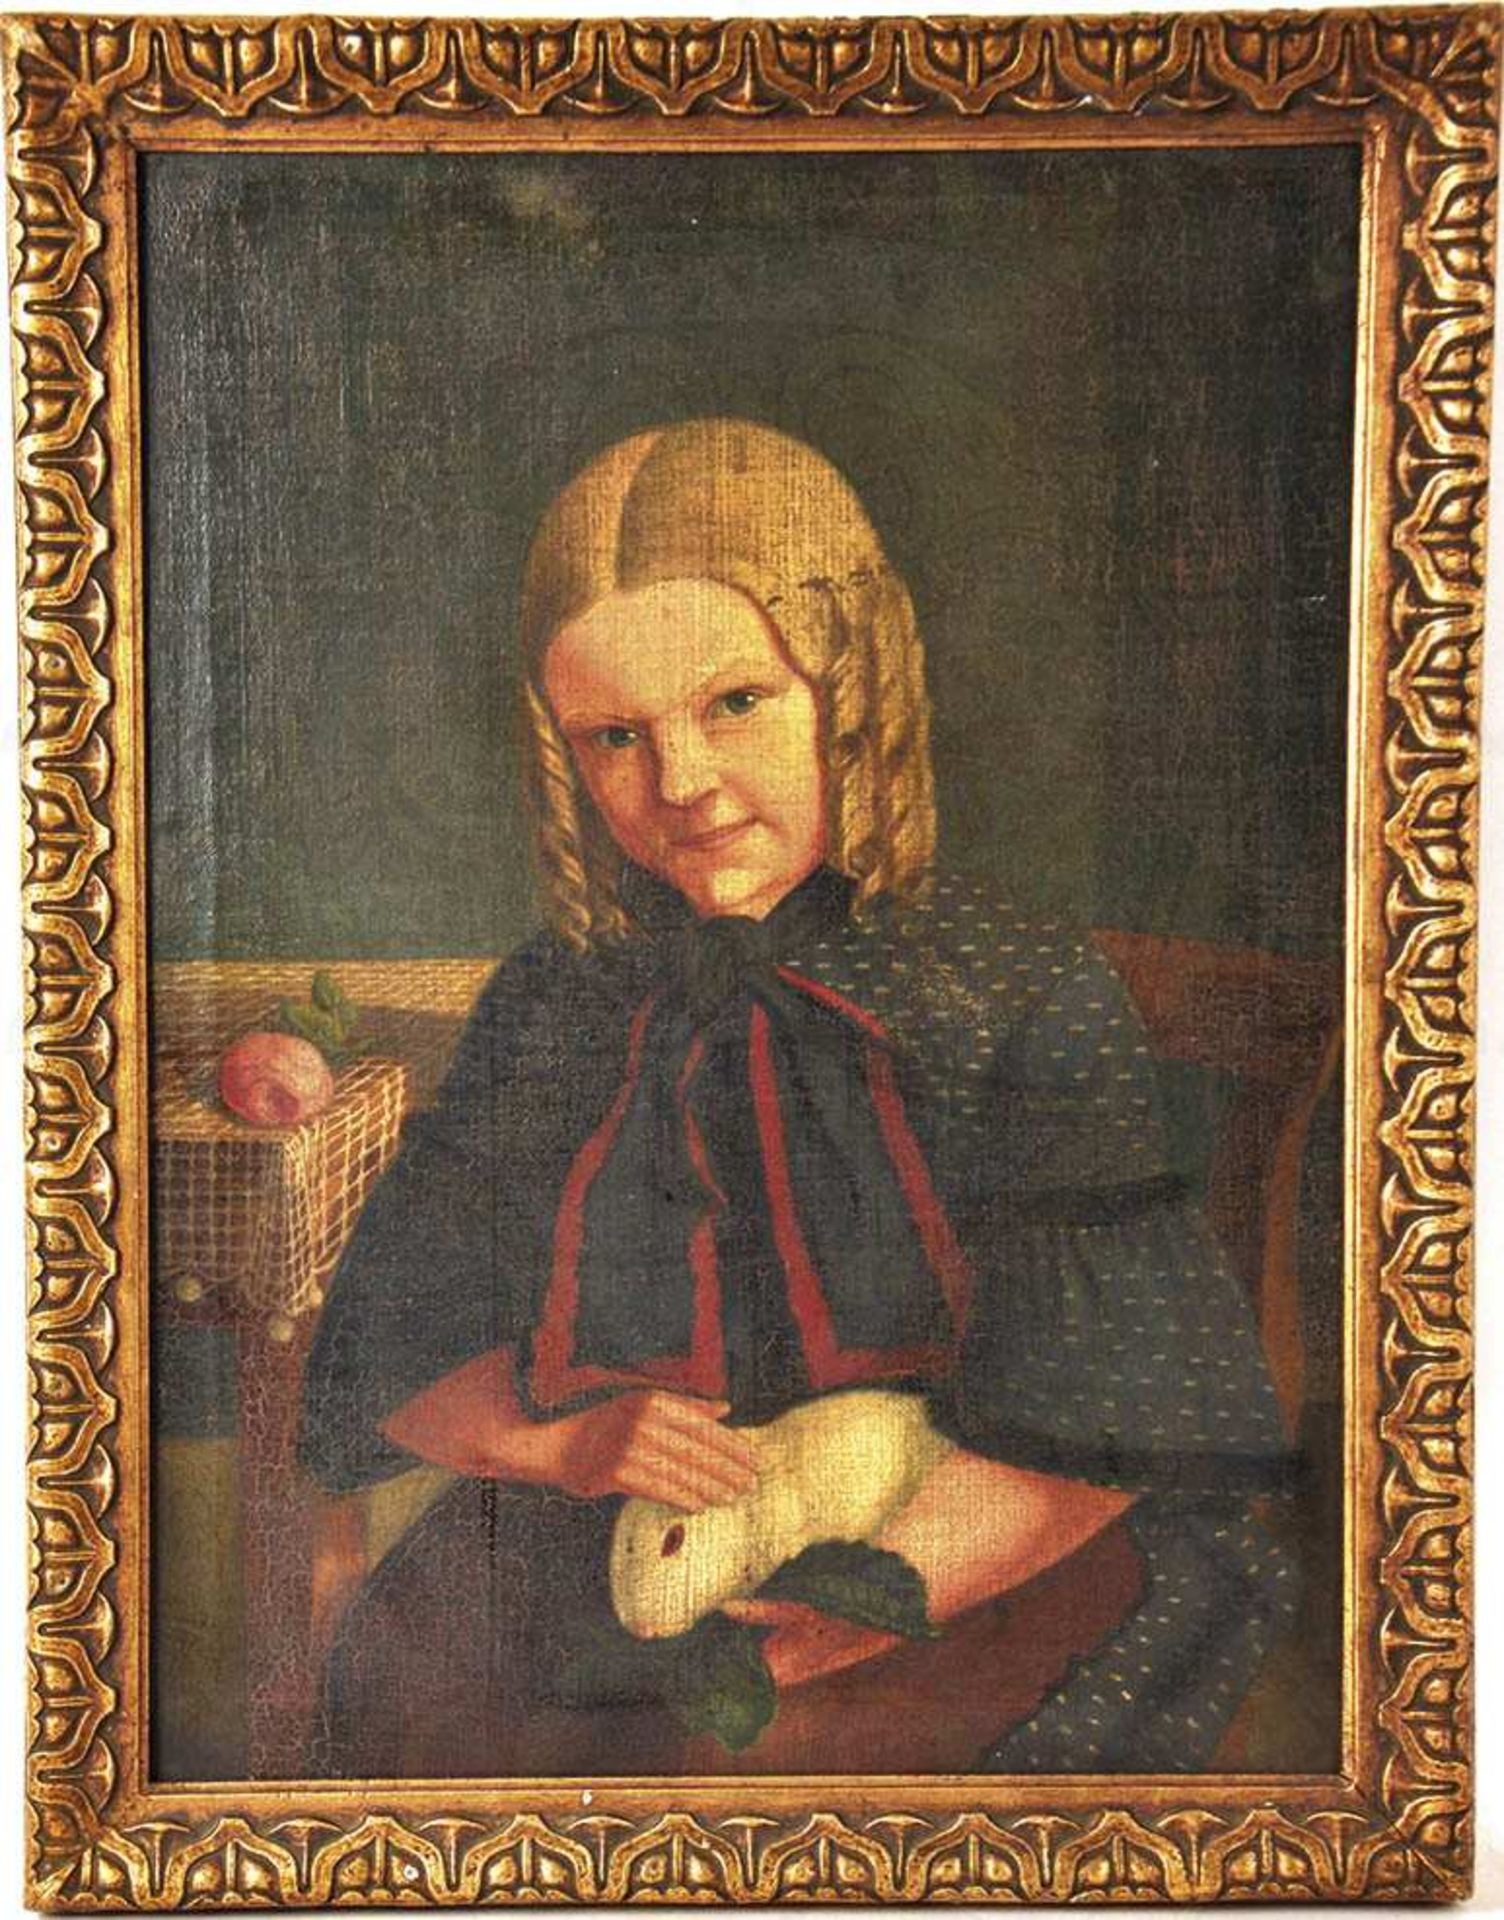 PORTRAIT EINES MÄDCHENS, Öl auf Leinwand, im Malstil der Nazarener, Frisur u. Kleidung um 1830,